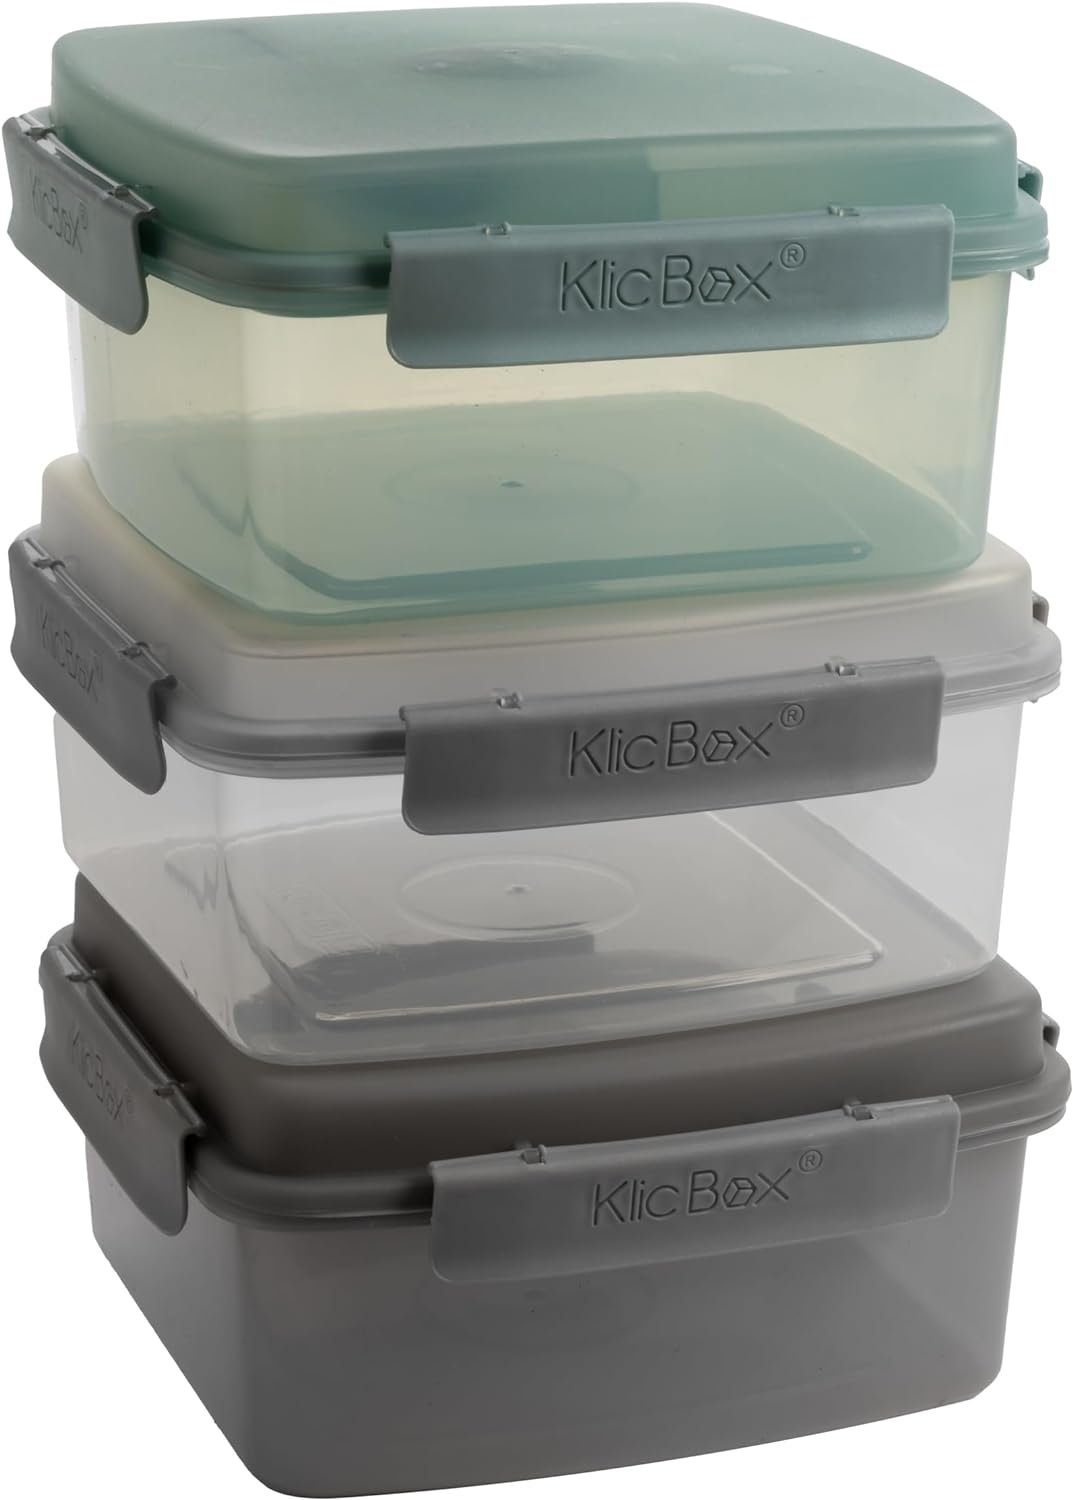 Centi Lunchbox 3er Set mit Besteck und Dressingbehälter, Salatbox to go, Kunststoff, (3-tlg., 9 cm*18.5 cm*18.5 cm), Essensbox mit Click-Verschluss